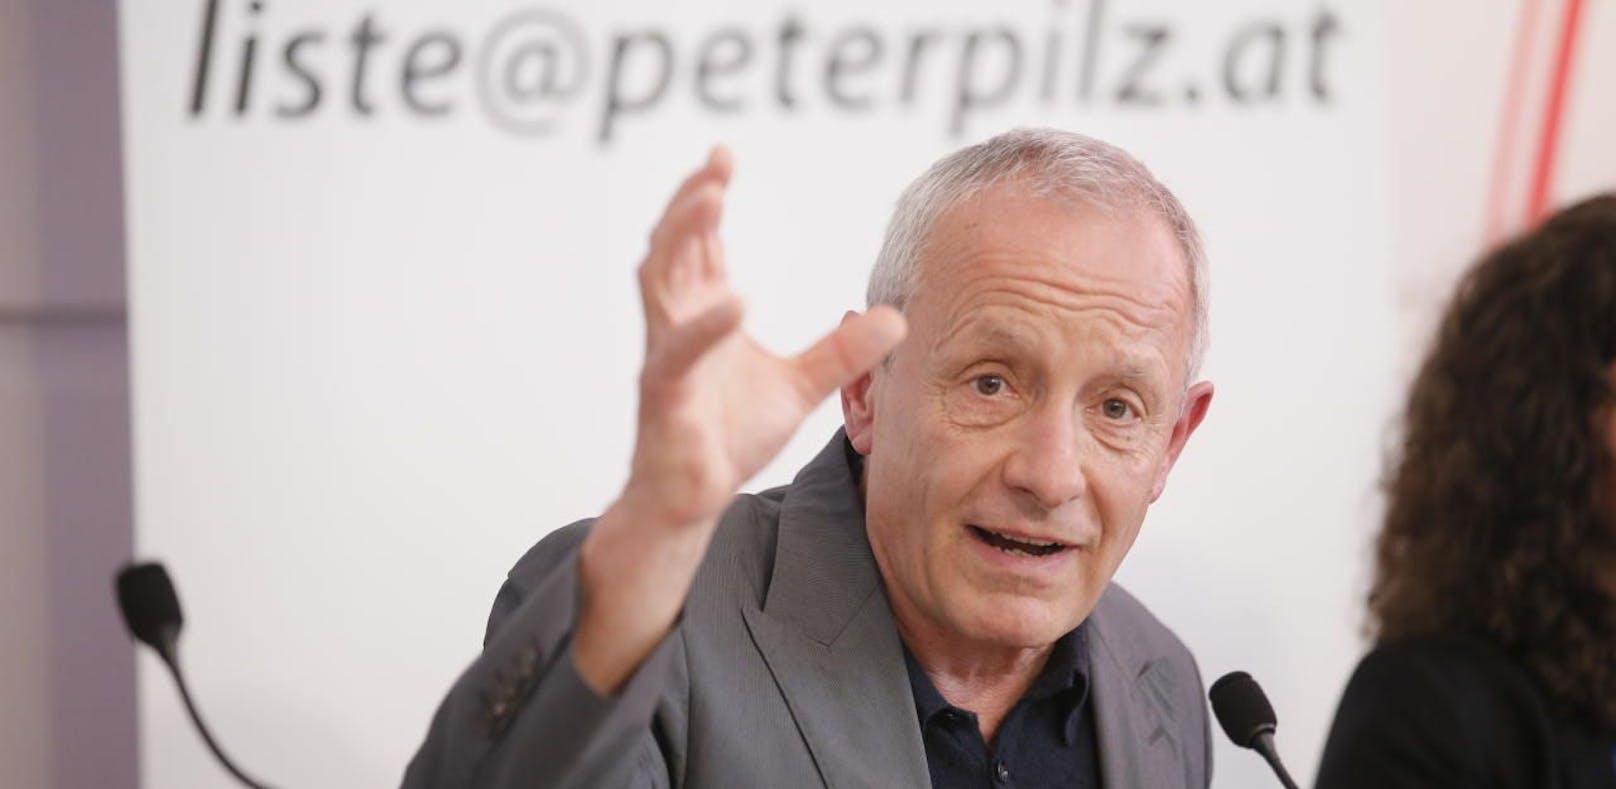 Keine Einladung zu TV-Duell: Peter Pilz klagt ORF